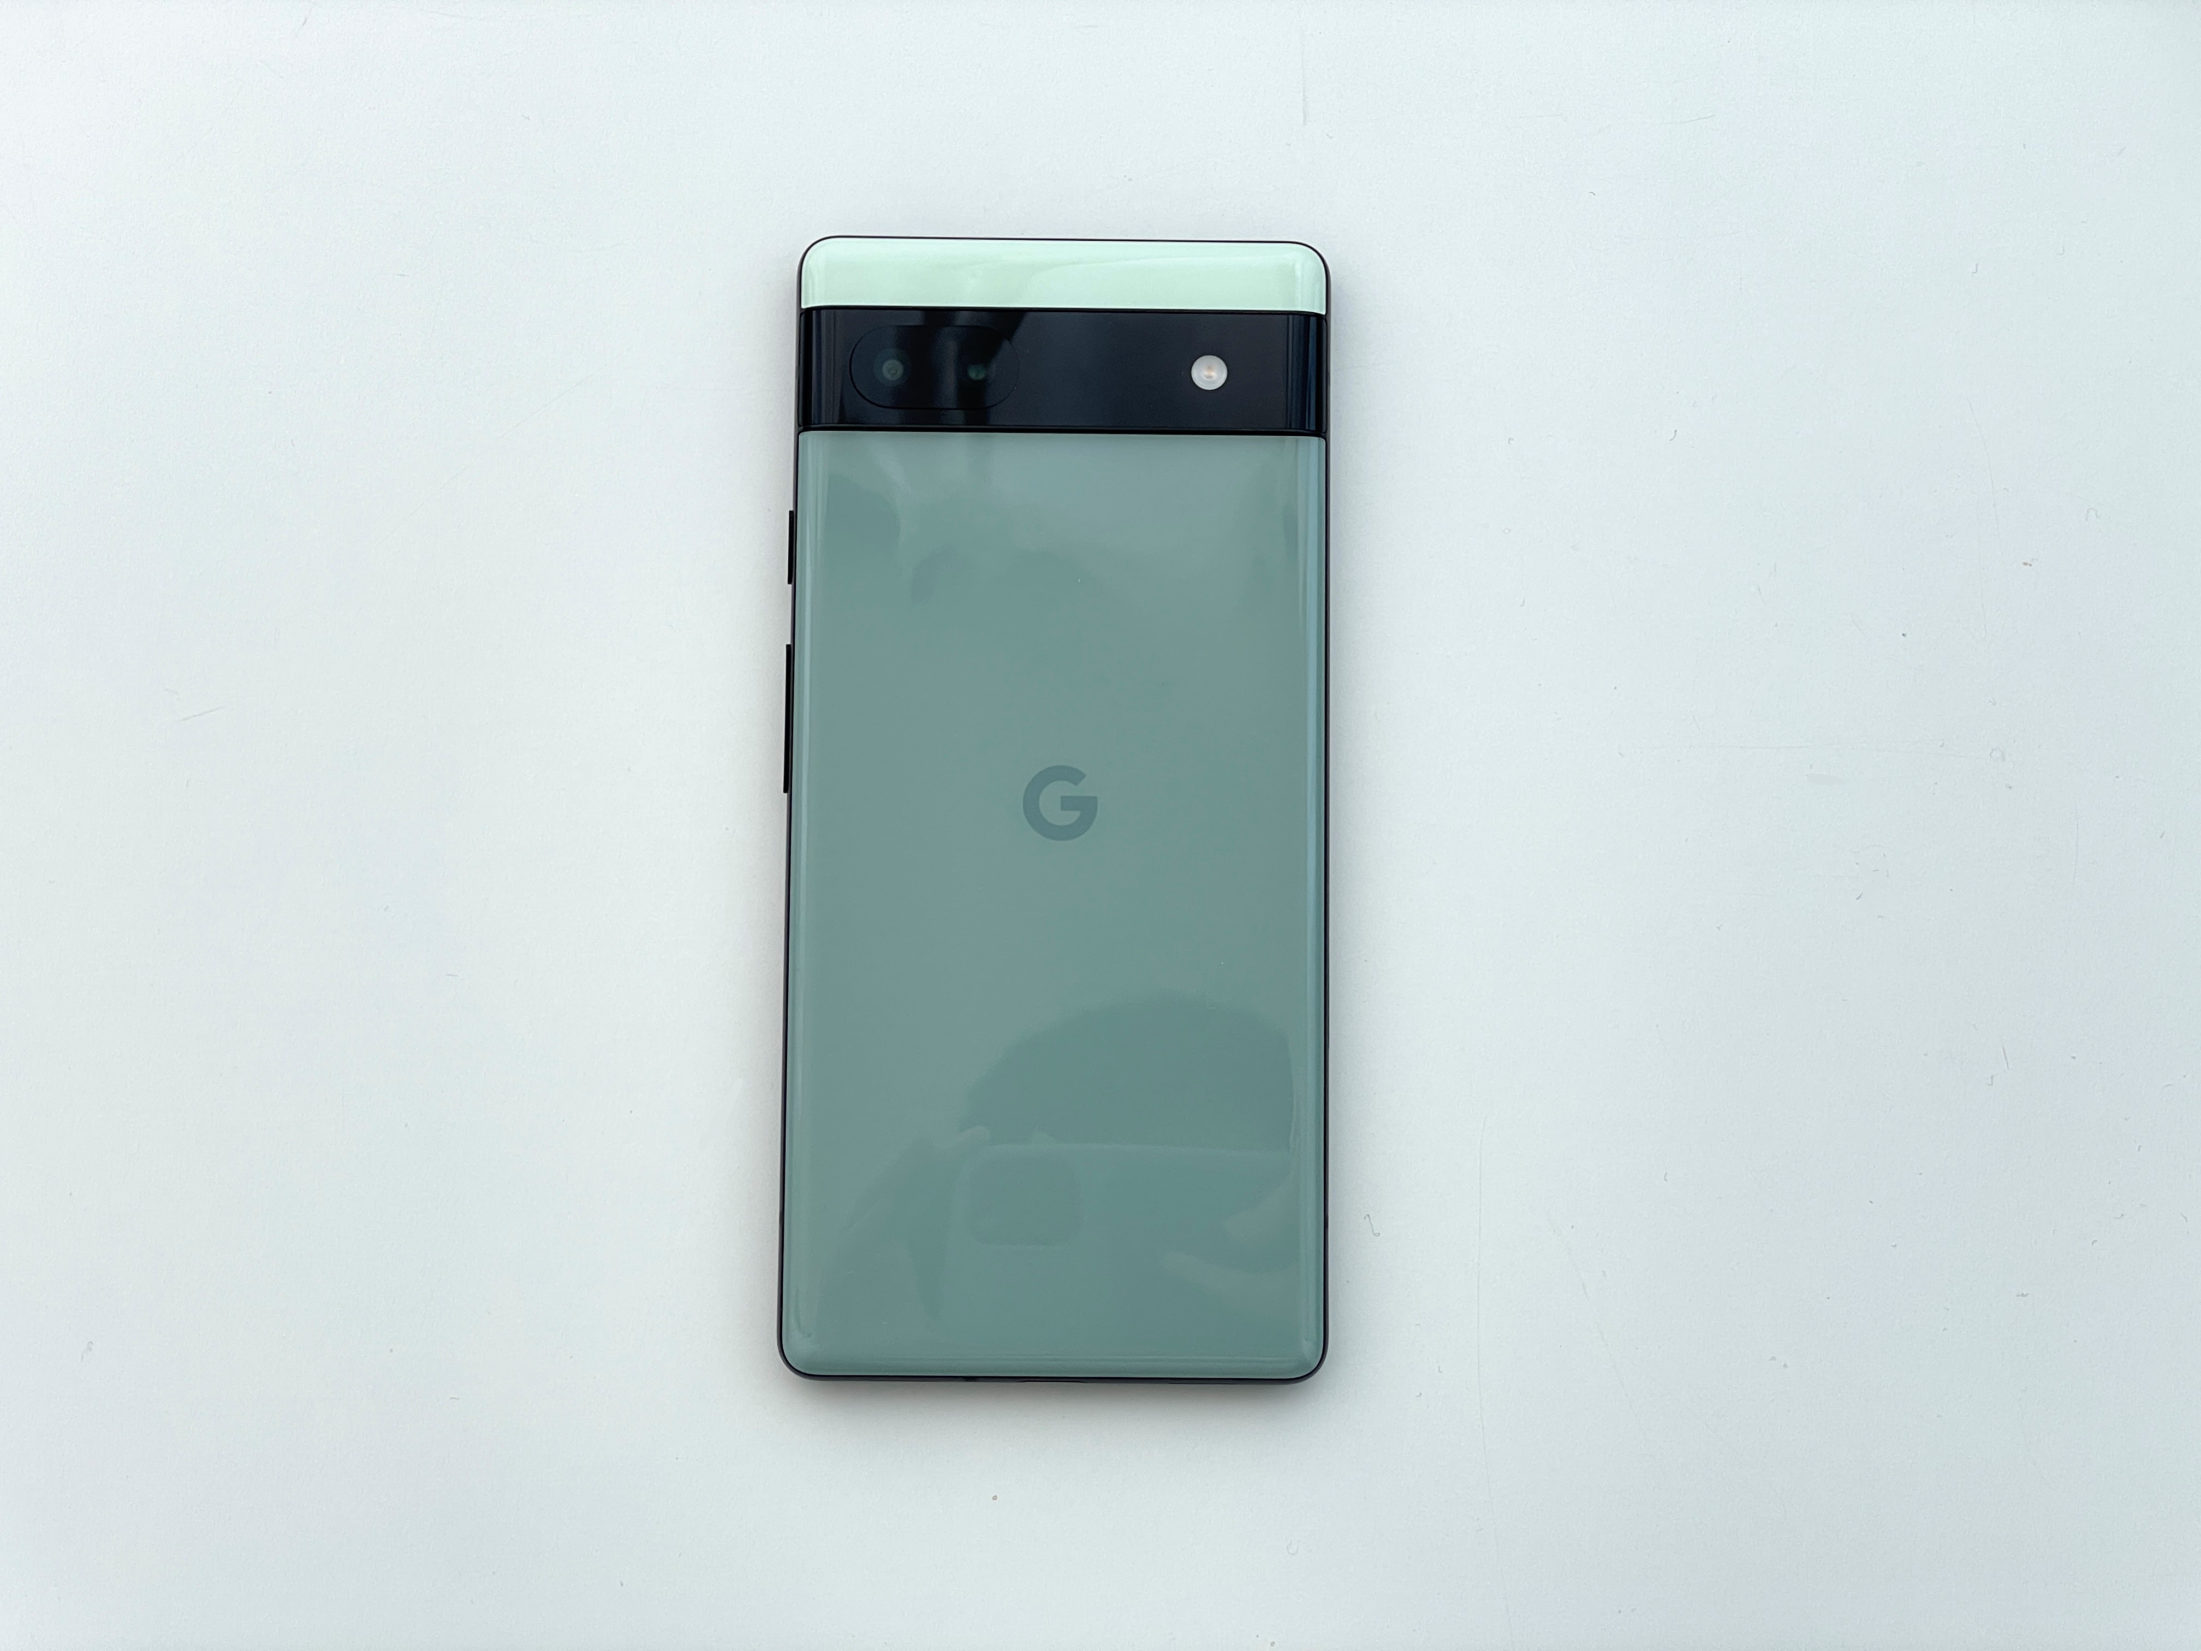 Google Pixel 6a外観レビュー:ちょうどいいサイズに良さげなデザイン 